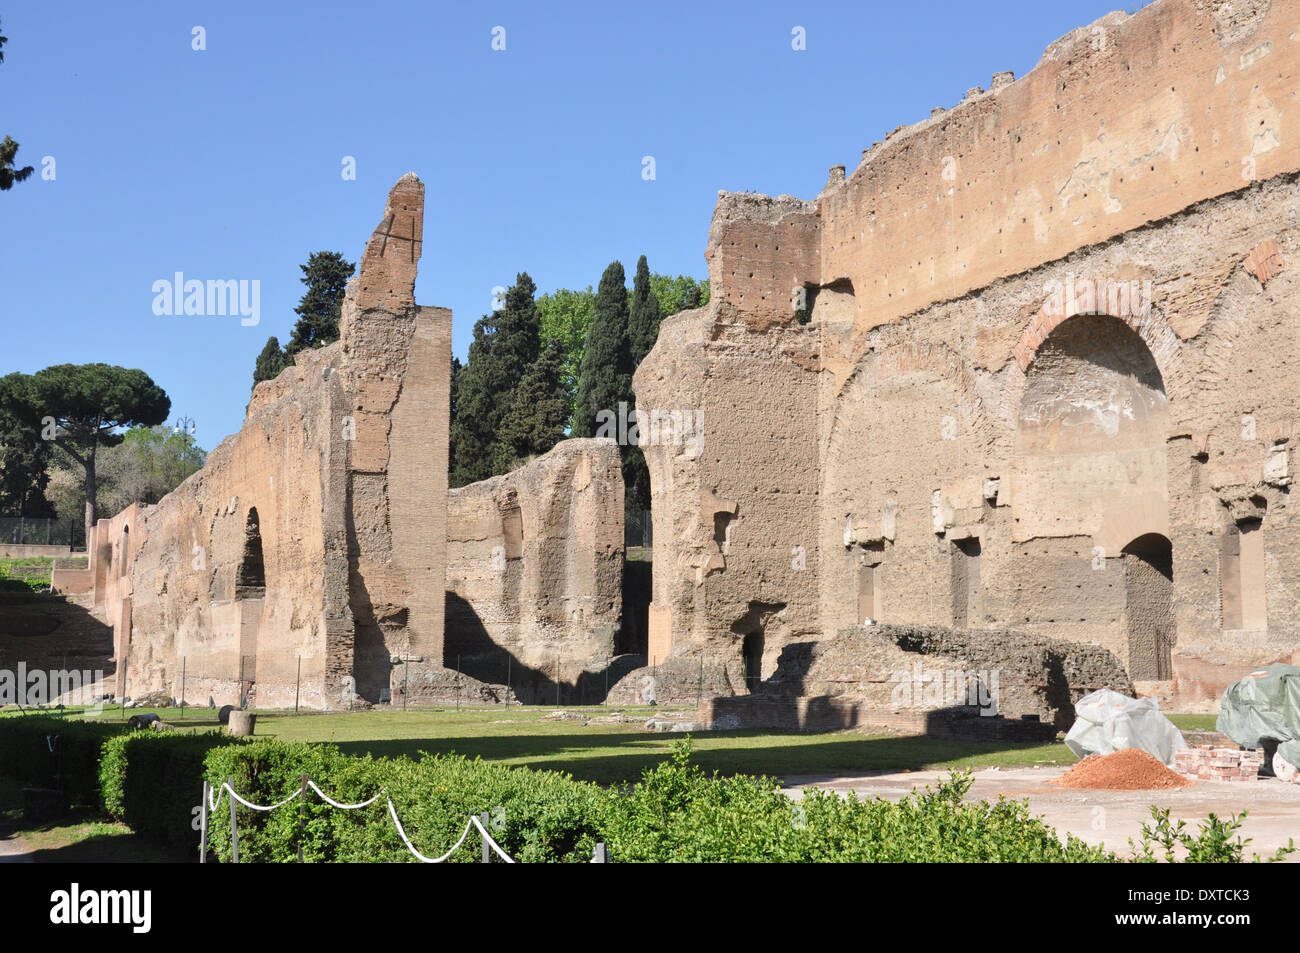 A view of the Baths of Caracalla, Terme di Caracalla, Rome Stock Photo